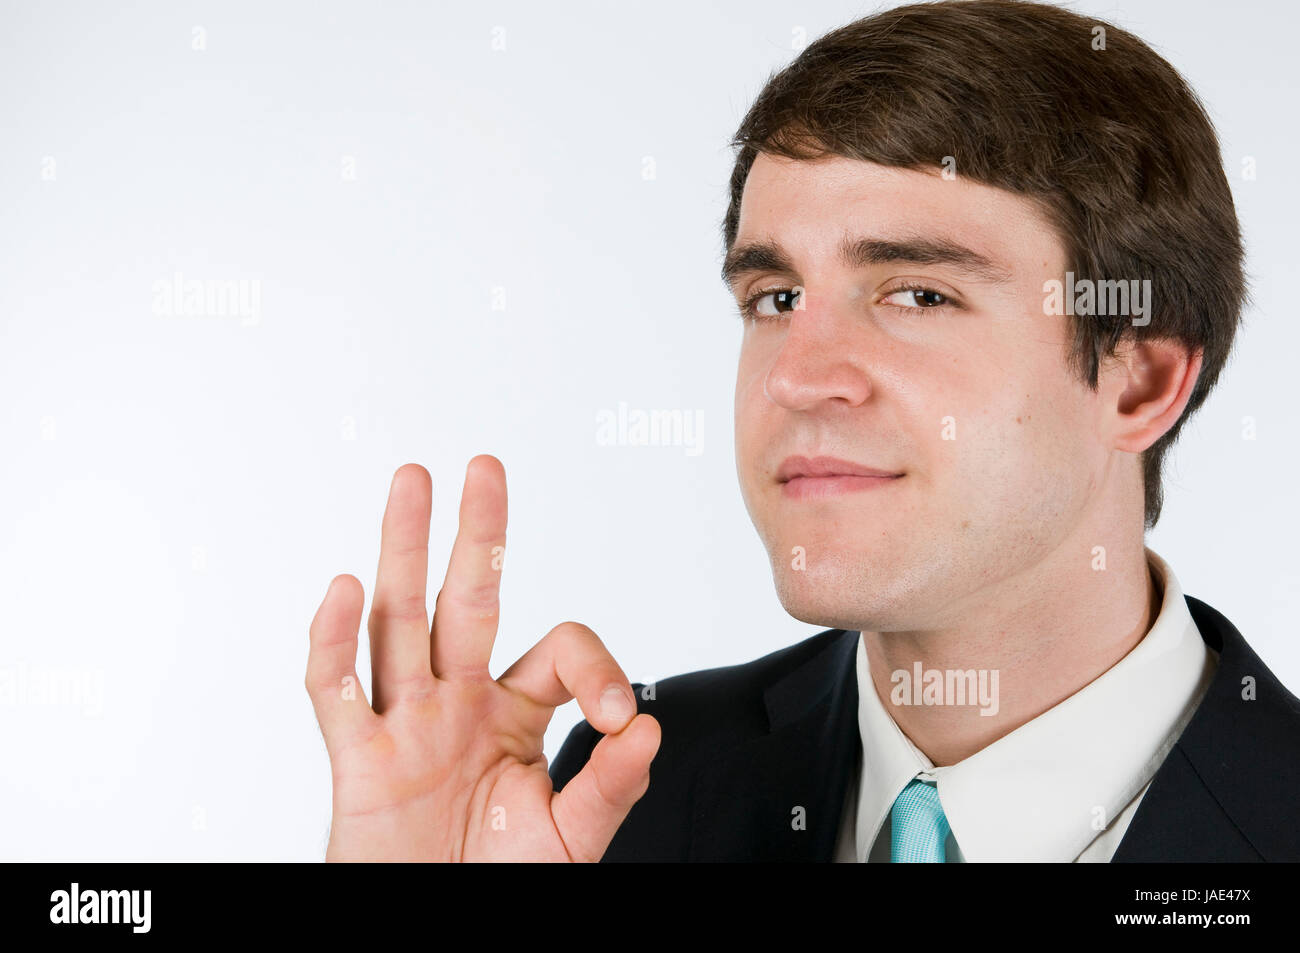 Kopf-und-Schulter-Portärt eines jungen Mannes in schwarzen Anzug vor weißen Hintergrund das O.K.-Zeichen in die Kamera zeigend Stock Photo